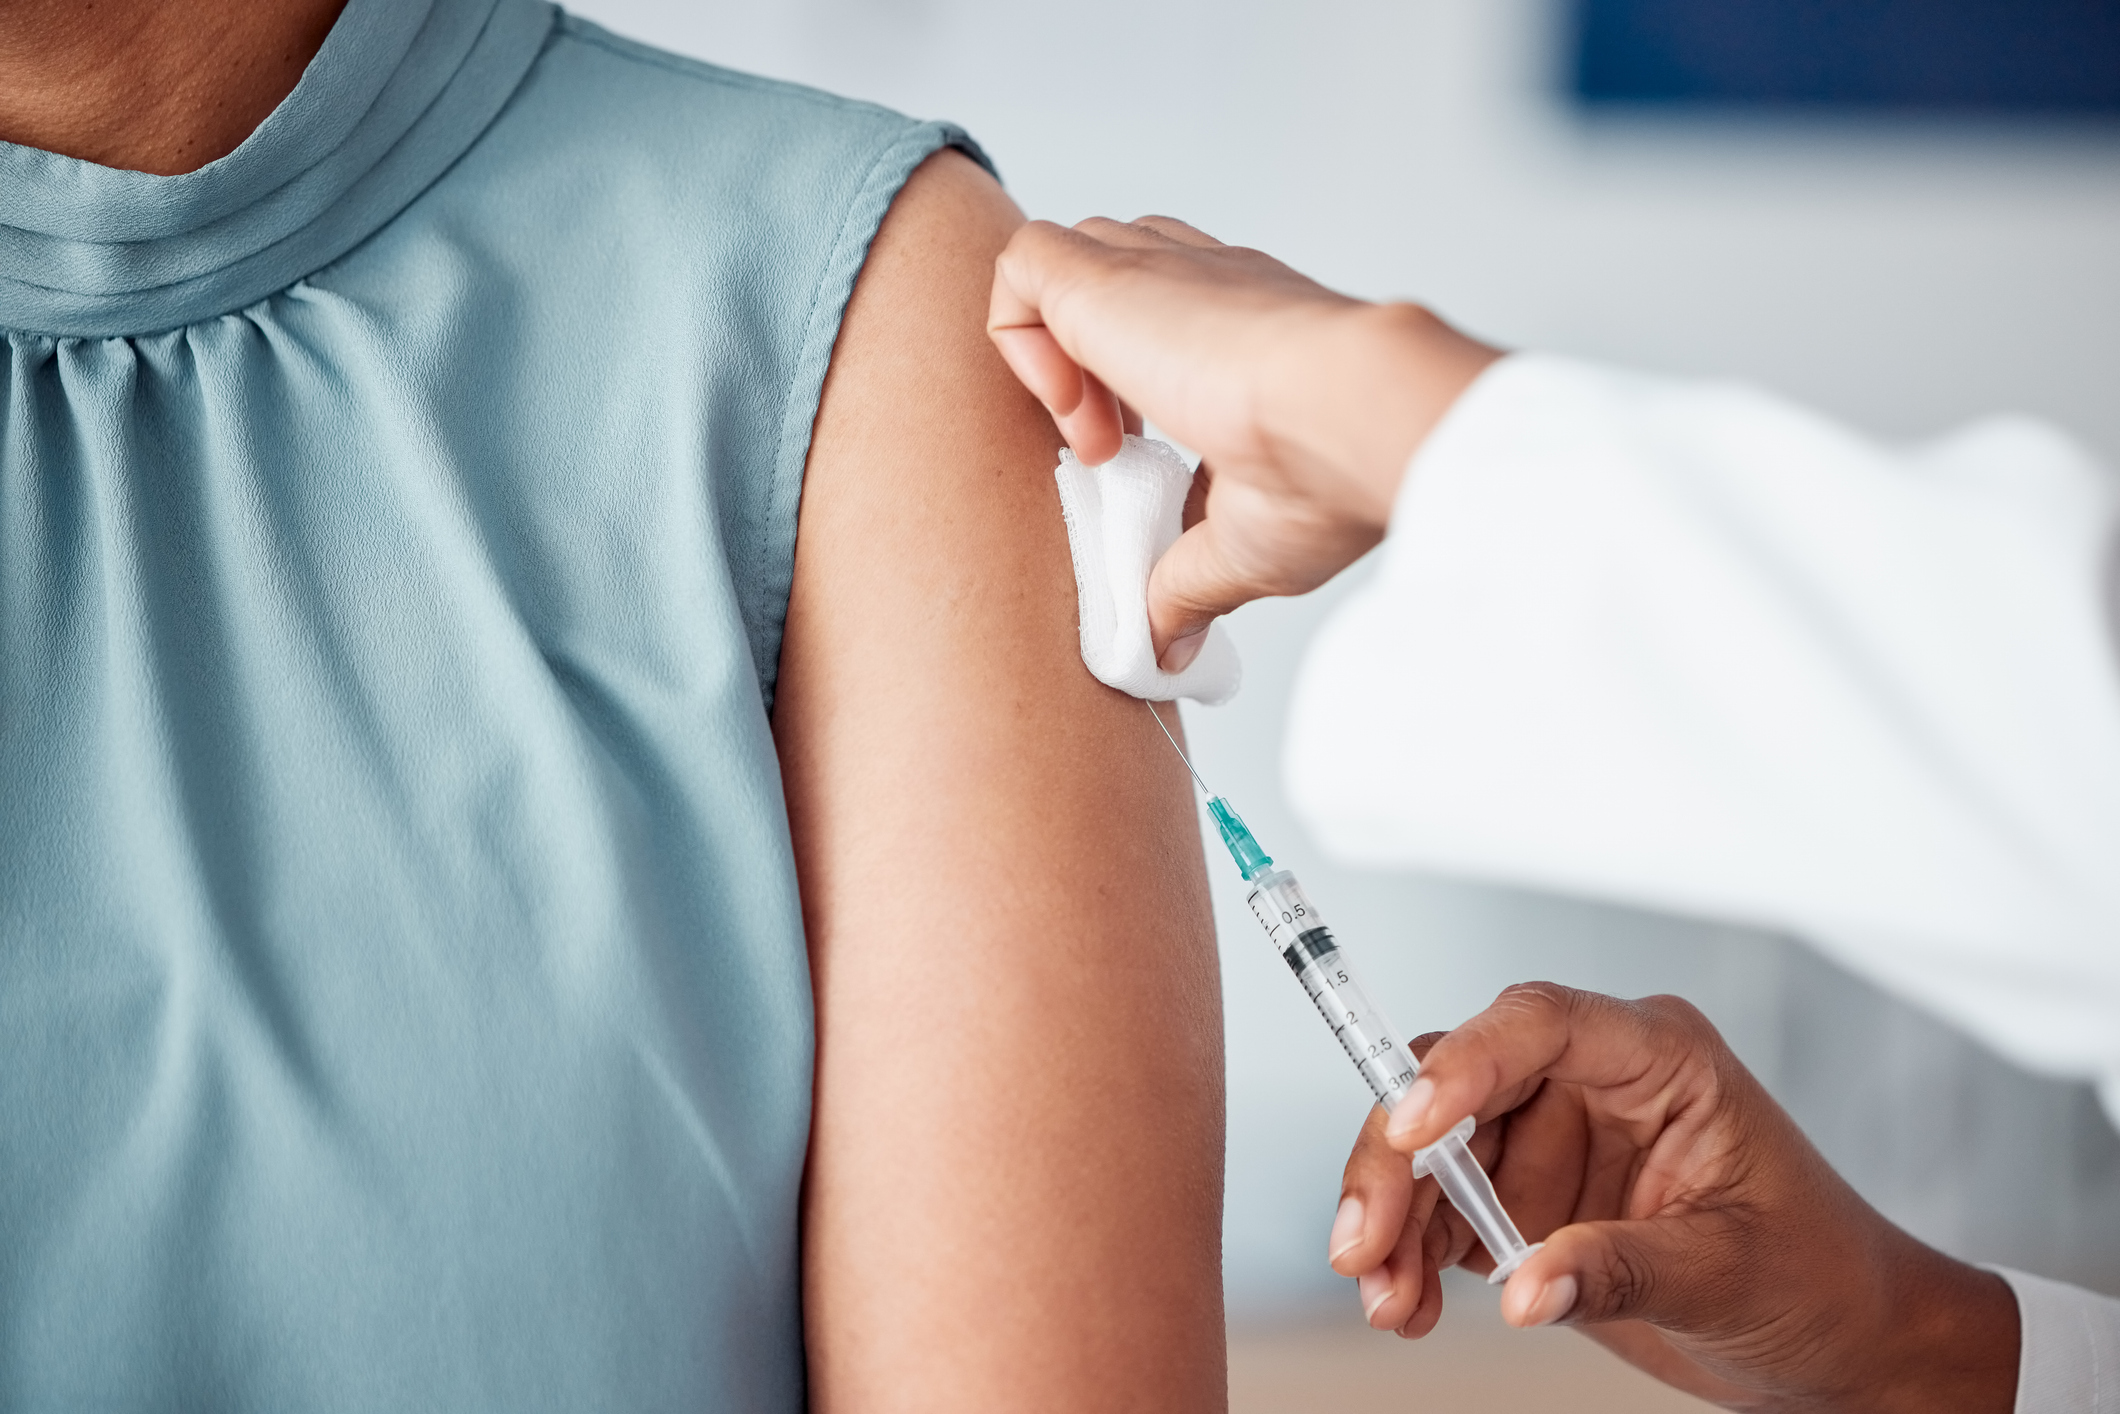 HepB vaccine compliance